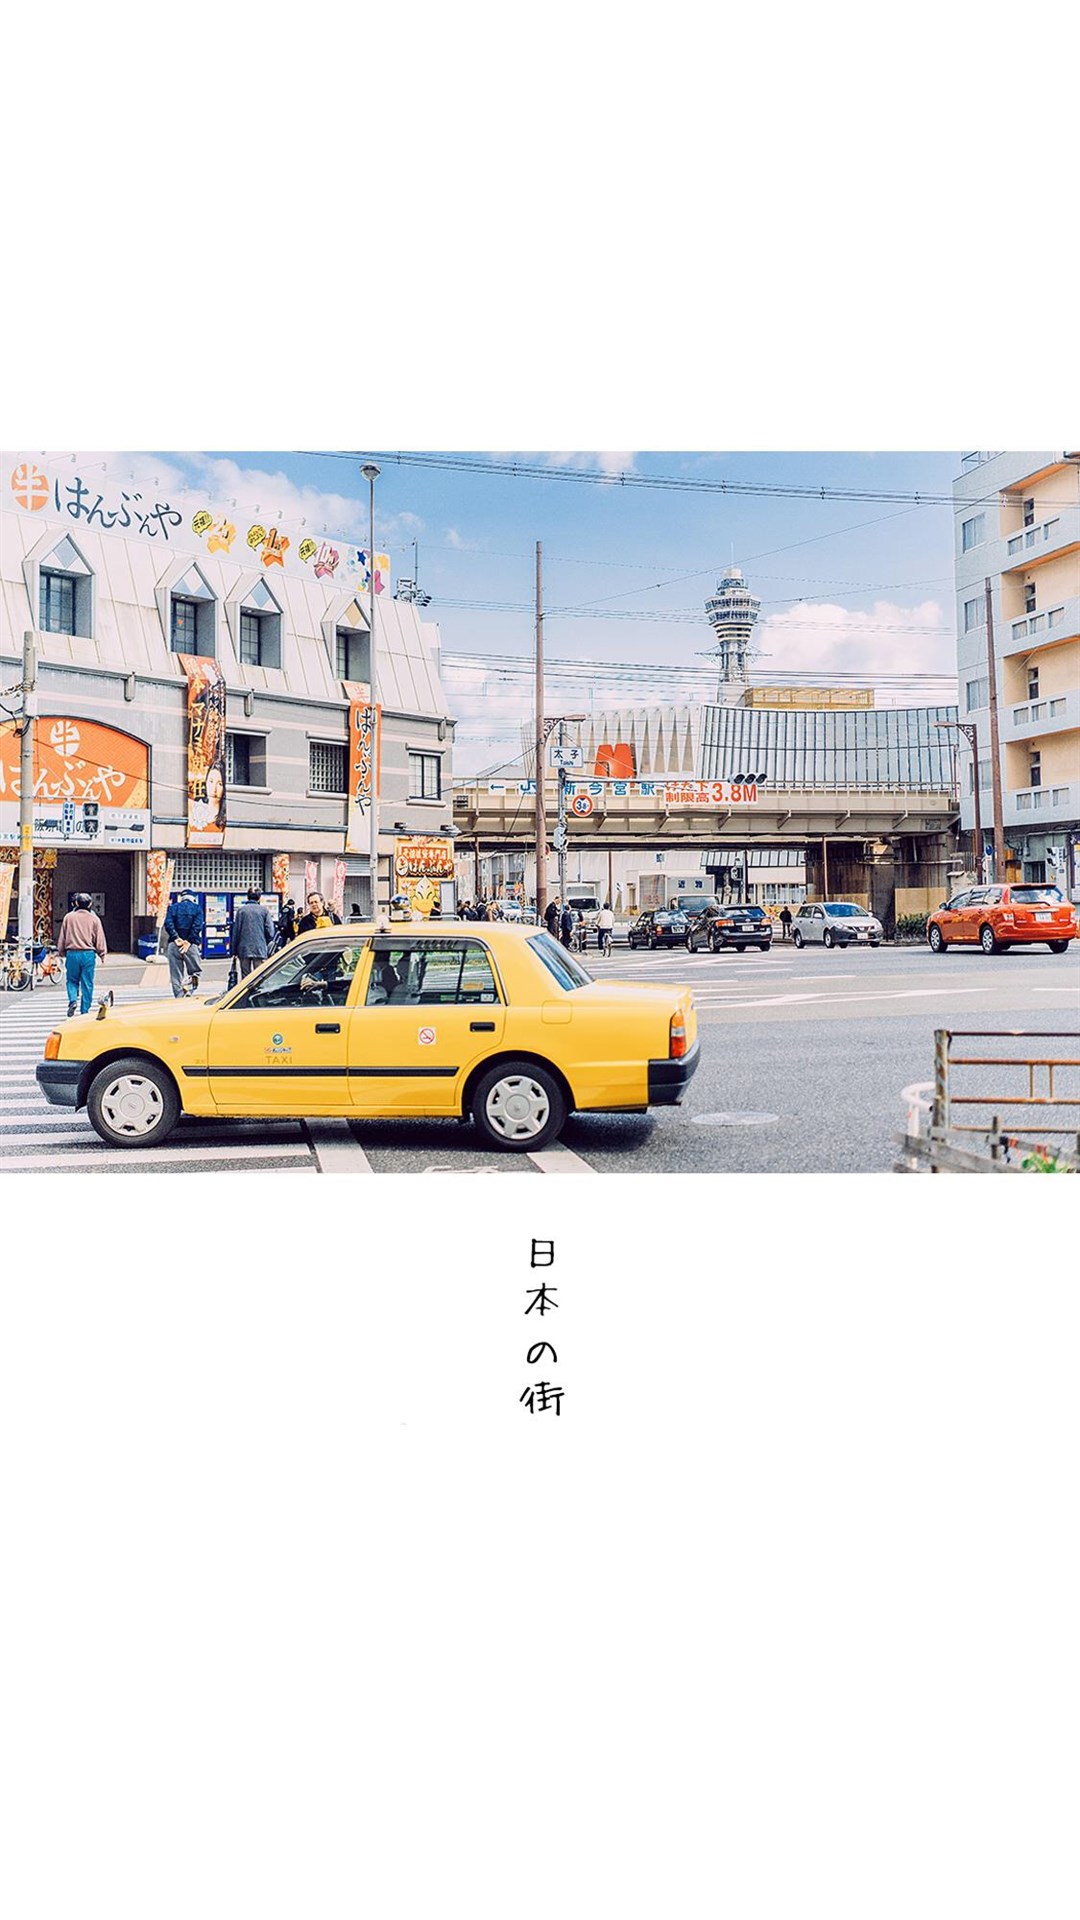 街景图片素材 清新简约日本街景风光手机壁纸(3)